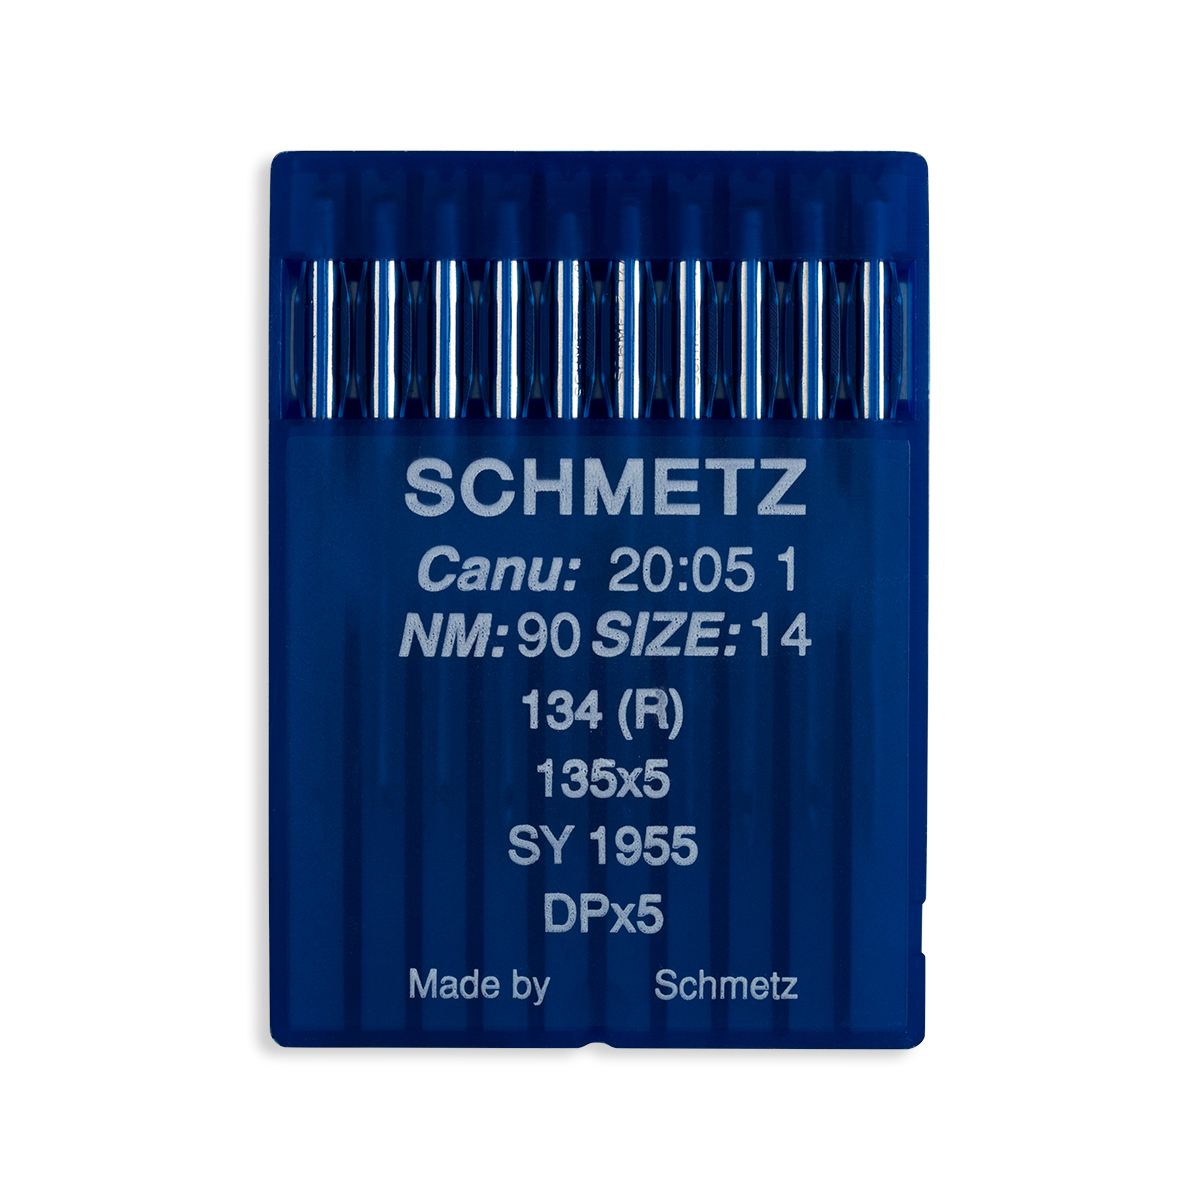 Schmetz Regular Point Industrial Machine Needles - 135x5, 134 (R